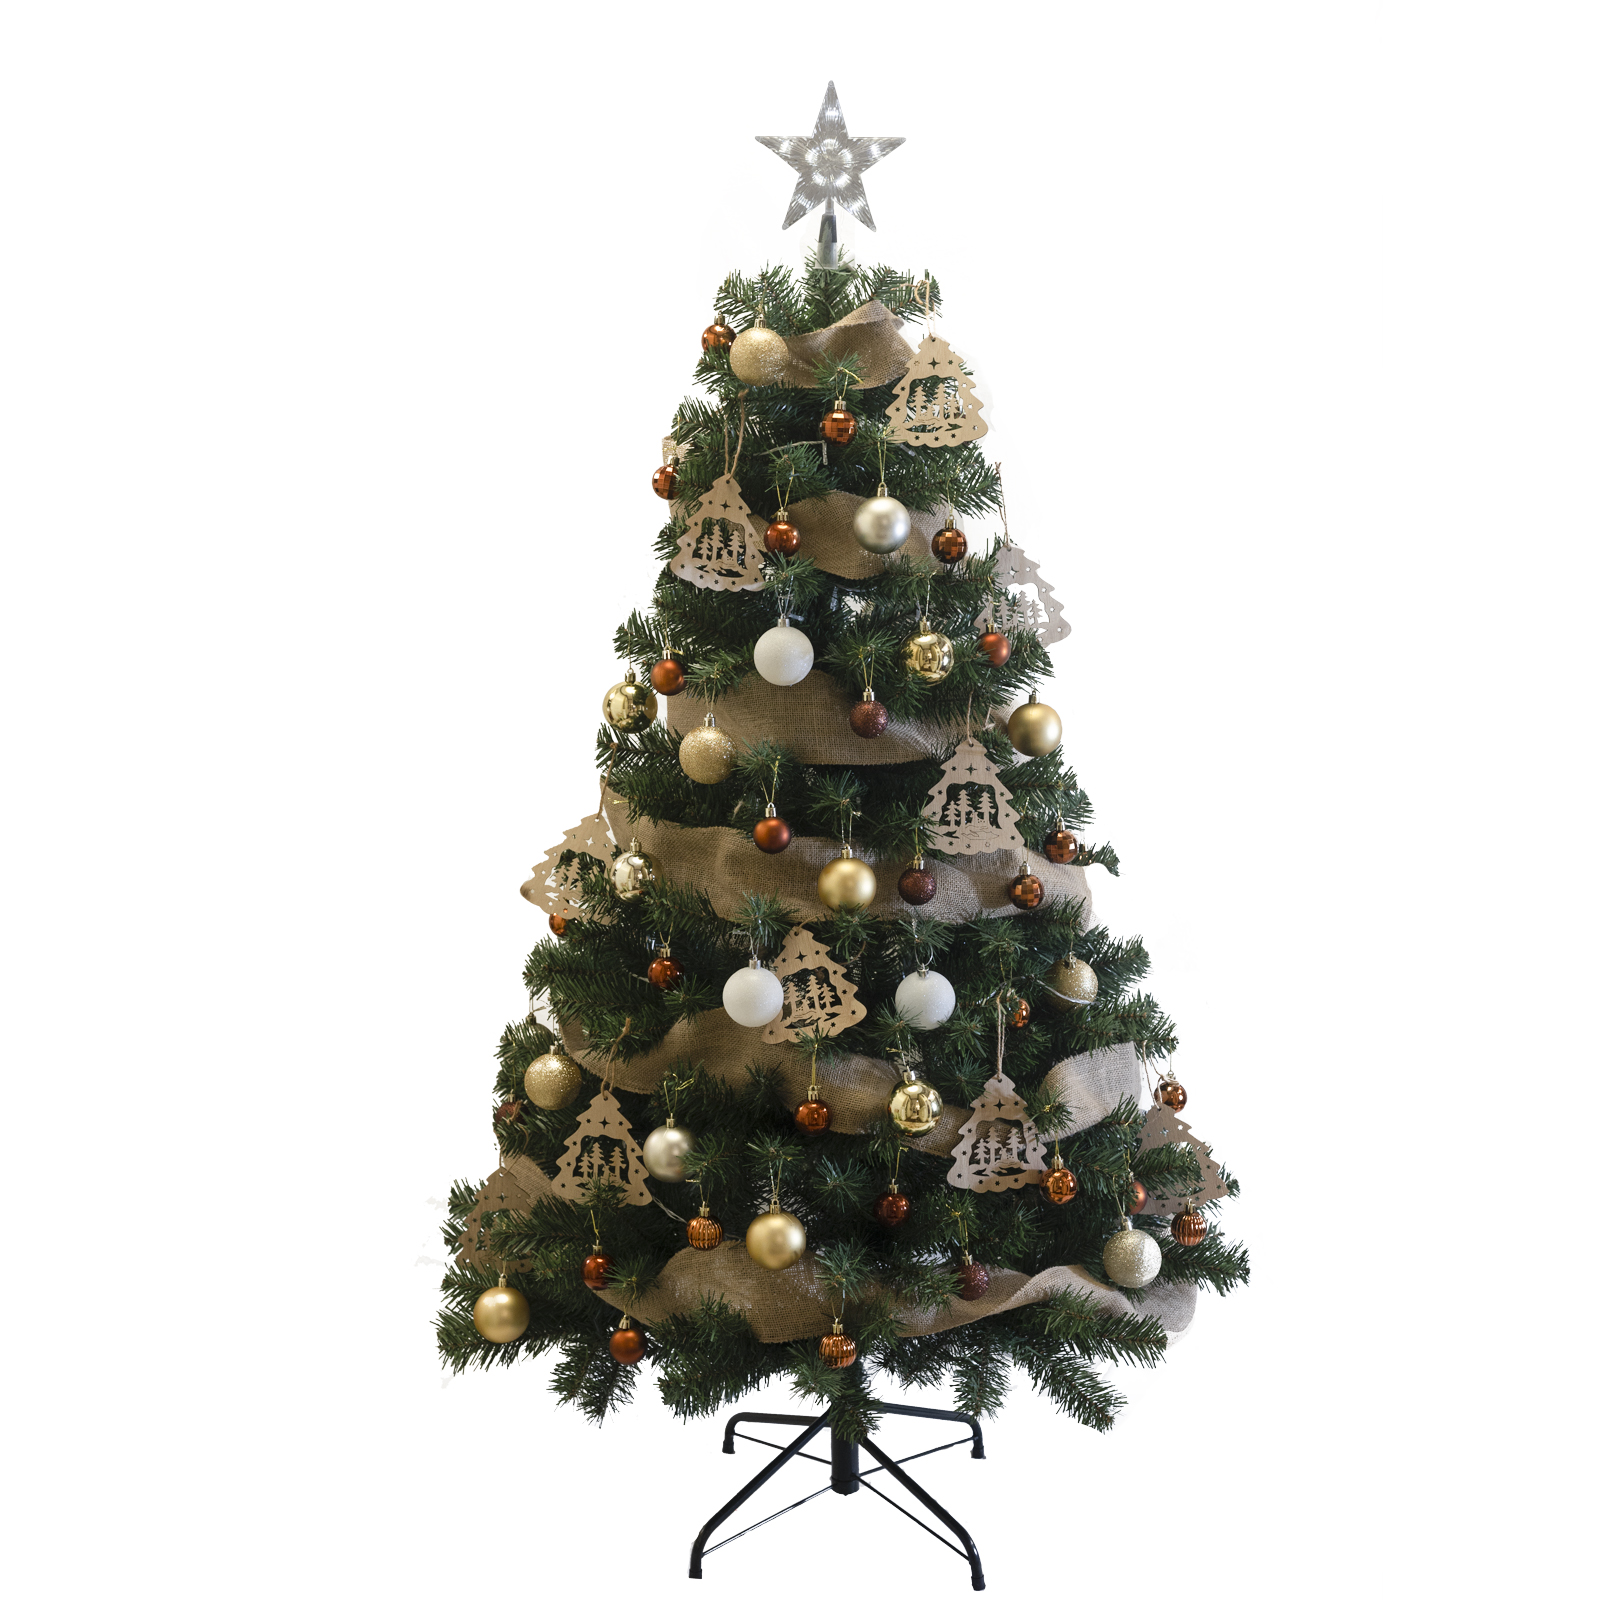 クリスマスツリー 北欧風 クリスマスツリーセット おしゃれ 150cm 